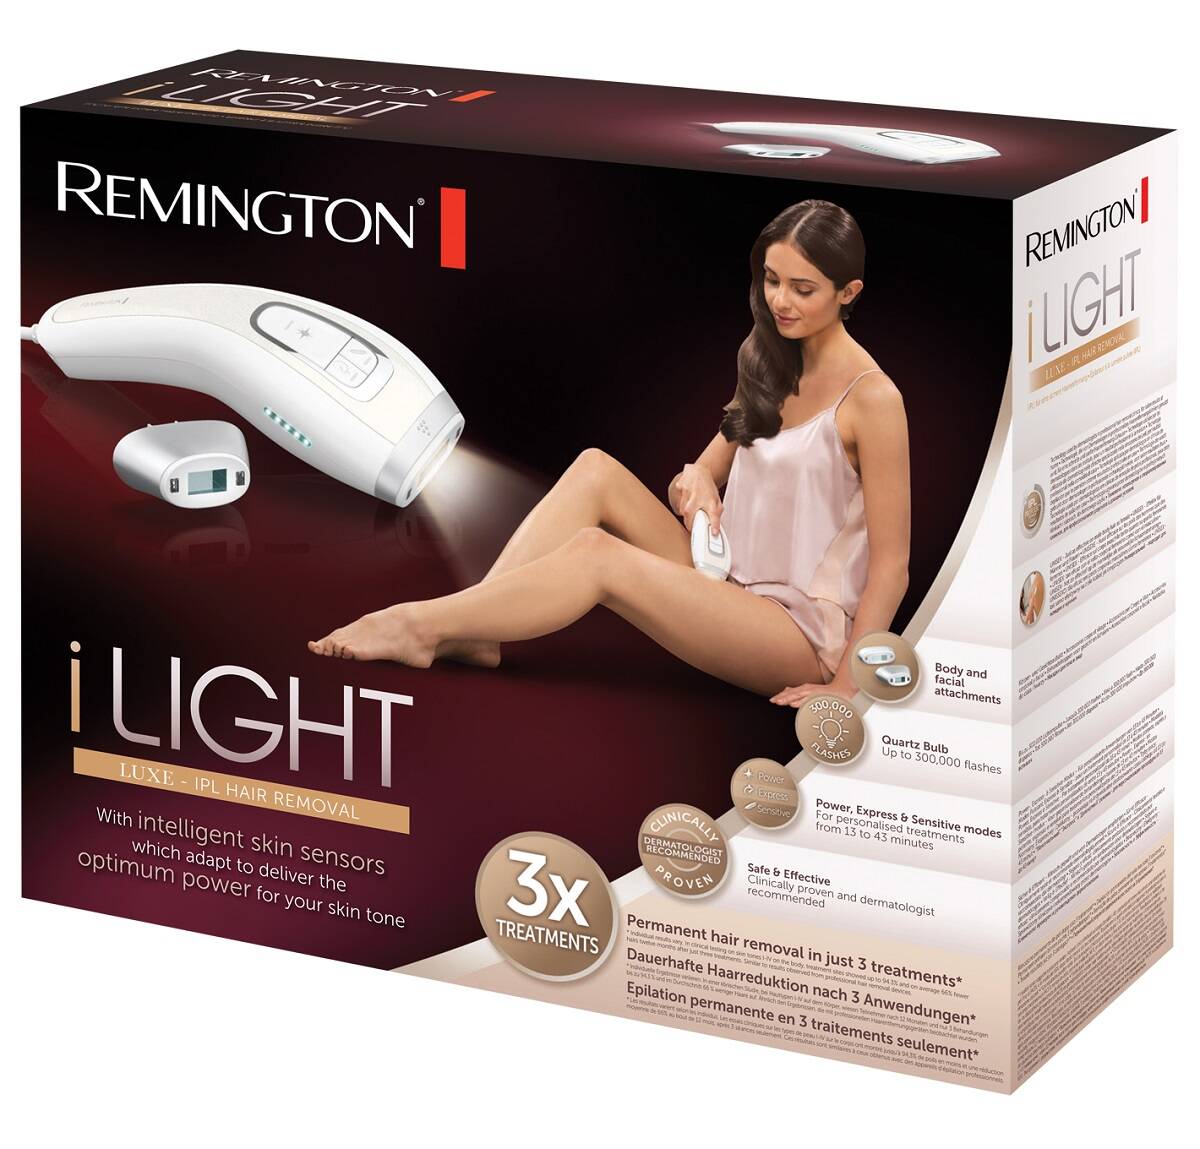 دستگاه لیزر بدن خانگی مدل IPL8500 رمینگتون اصل | برای استفاده زنان و مردان، مخصوص بدن و صورت، مجهز به تشخیص خودکار رنگ پوست Remington